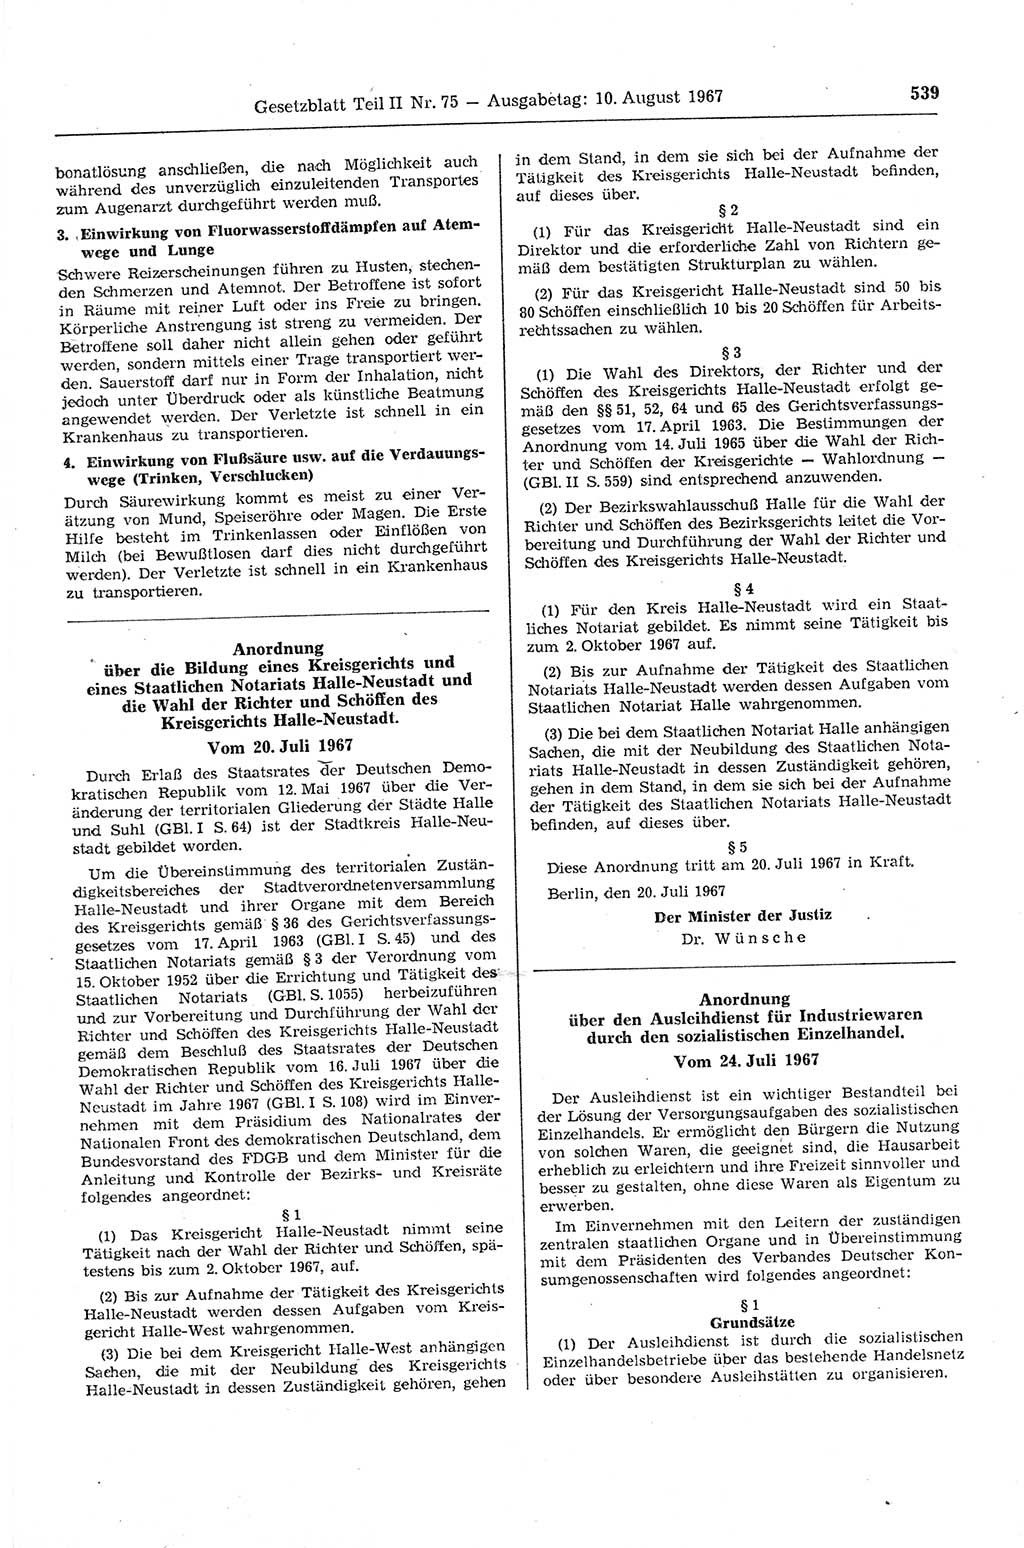 Gesetzblatt (GBl.) der Deutschen Demokratischen Republik (DDR) Teil ⅠⅠ 1967, Seite 539 (GBl. DDR ⅠⅠ 1967, S. 539)